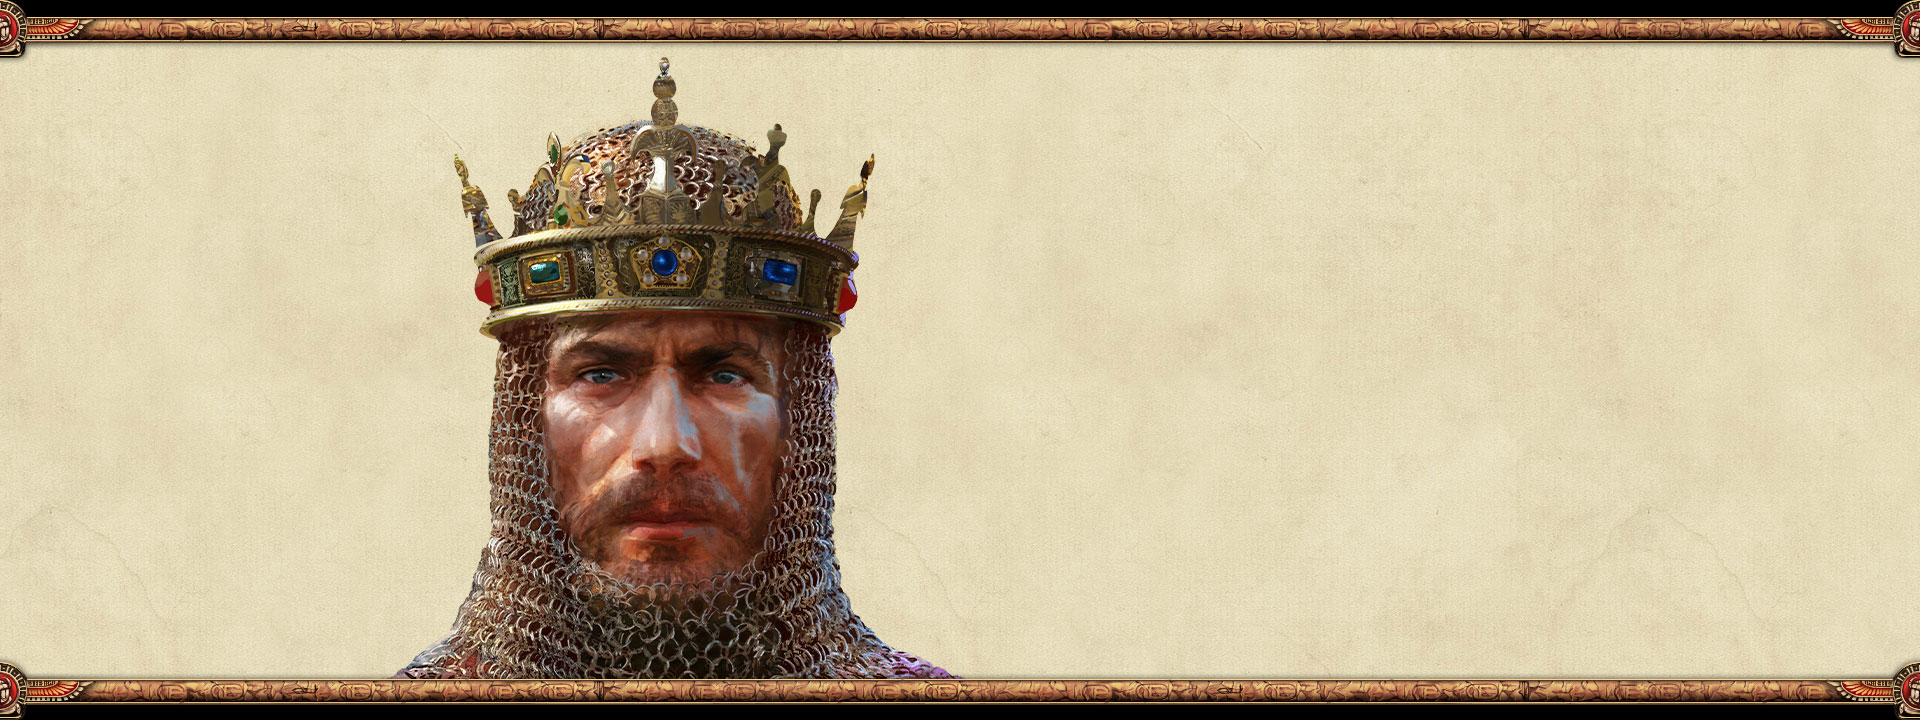 O governante de um império usando cota de malha e uma coroa